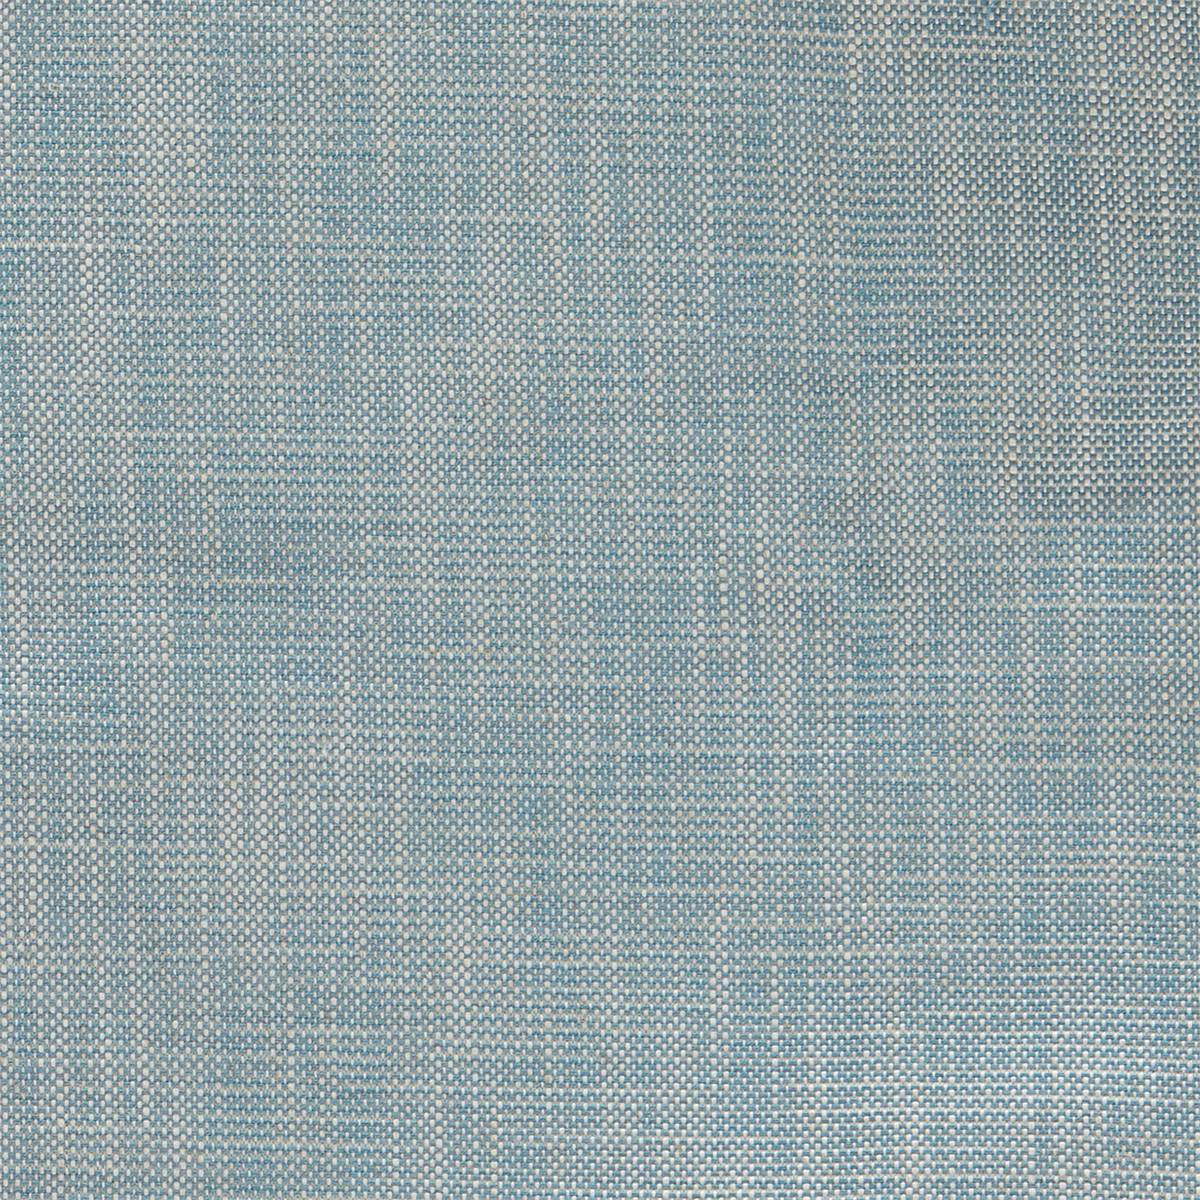 Lowen Denim Fabric by Sanderson